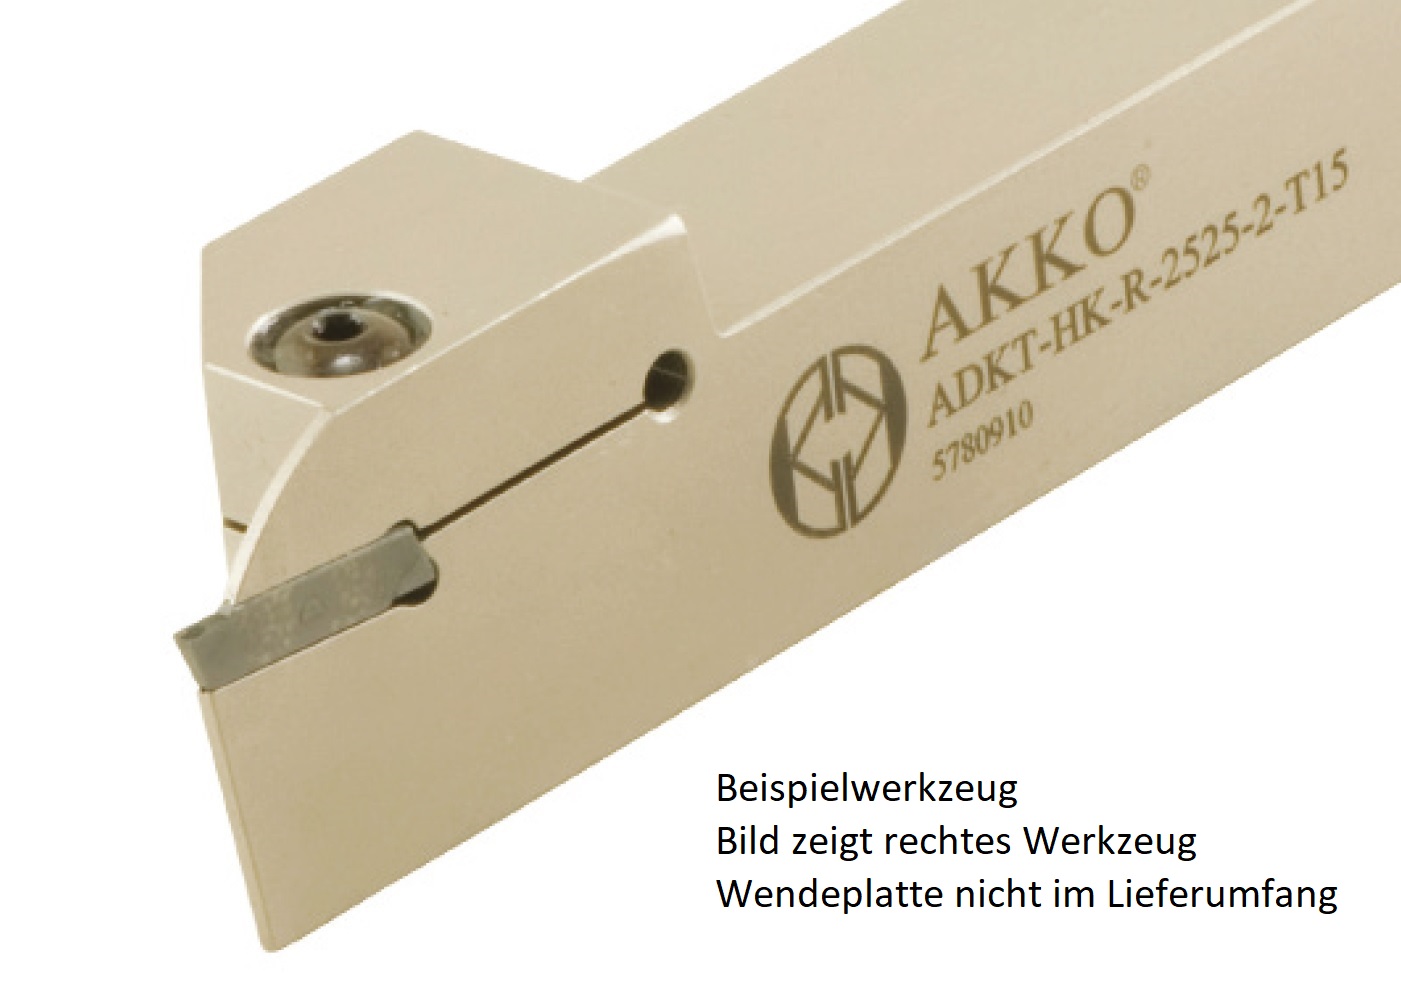 Abstechhalter ADKT-HK-L-2525-2-T15